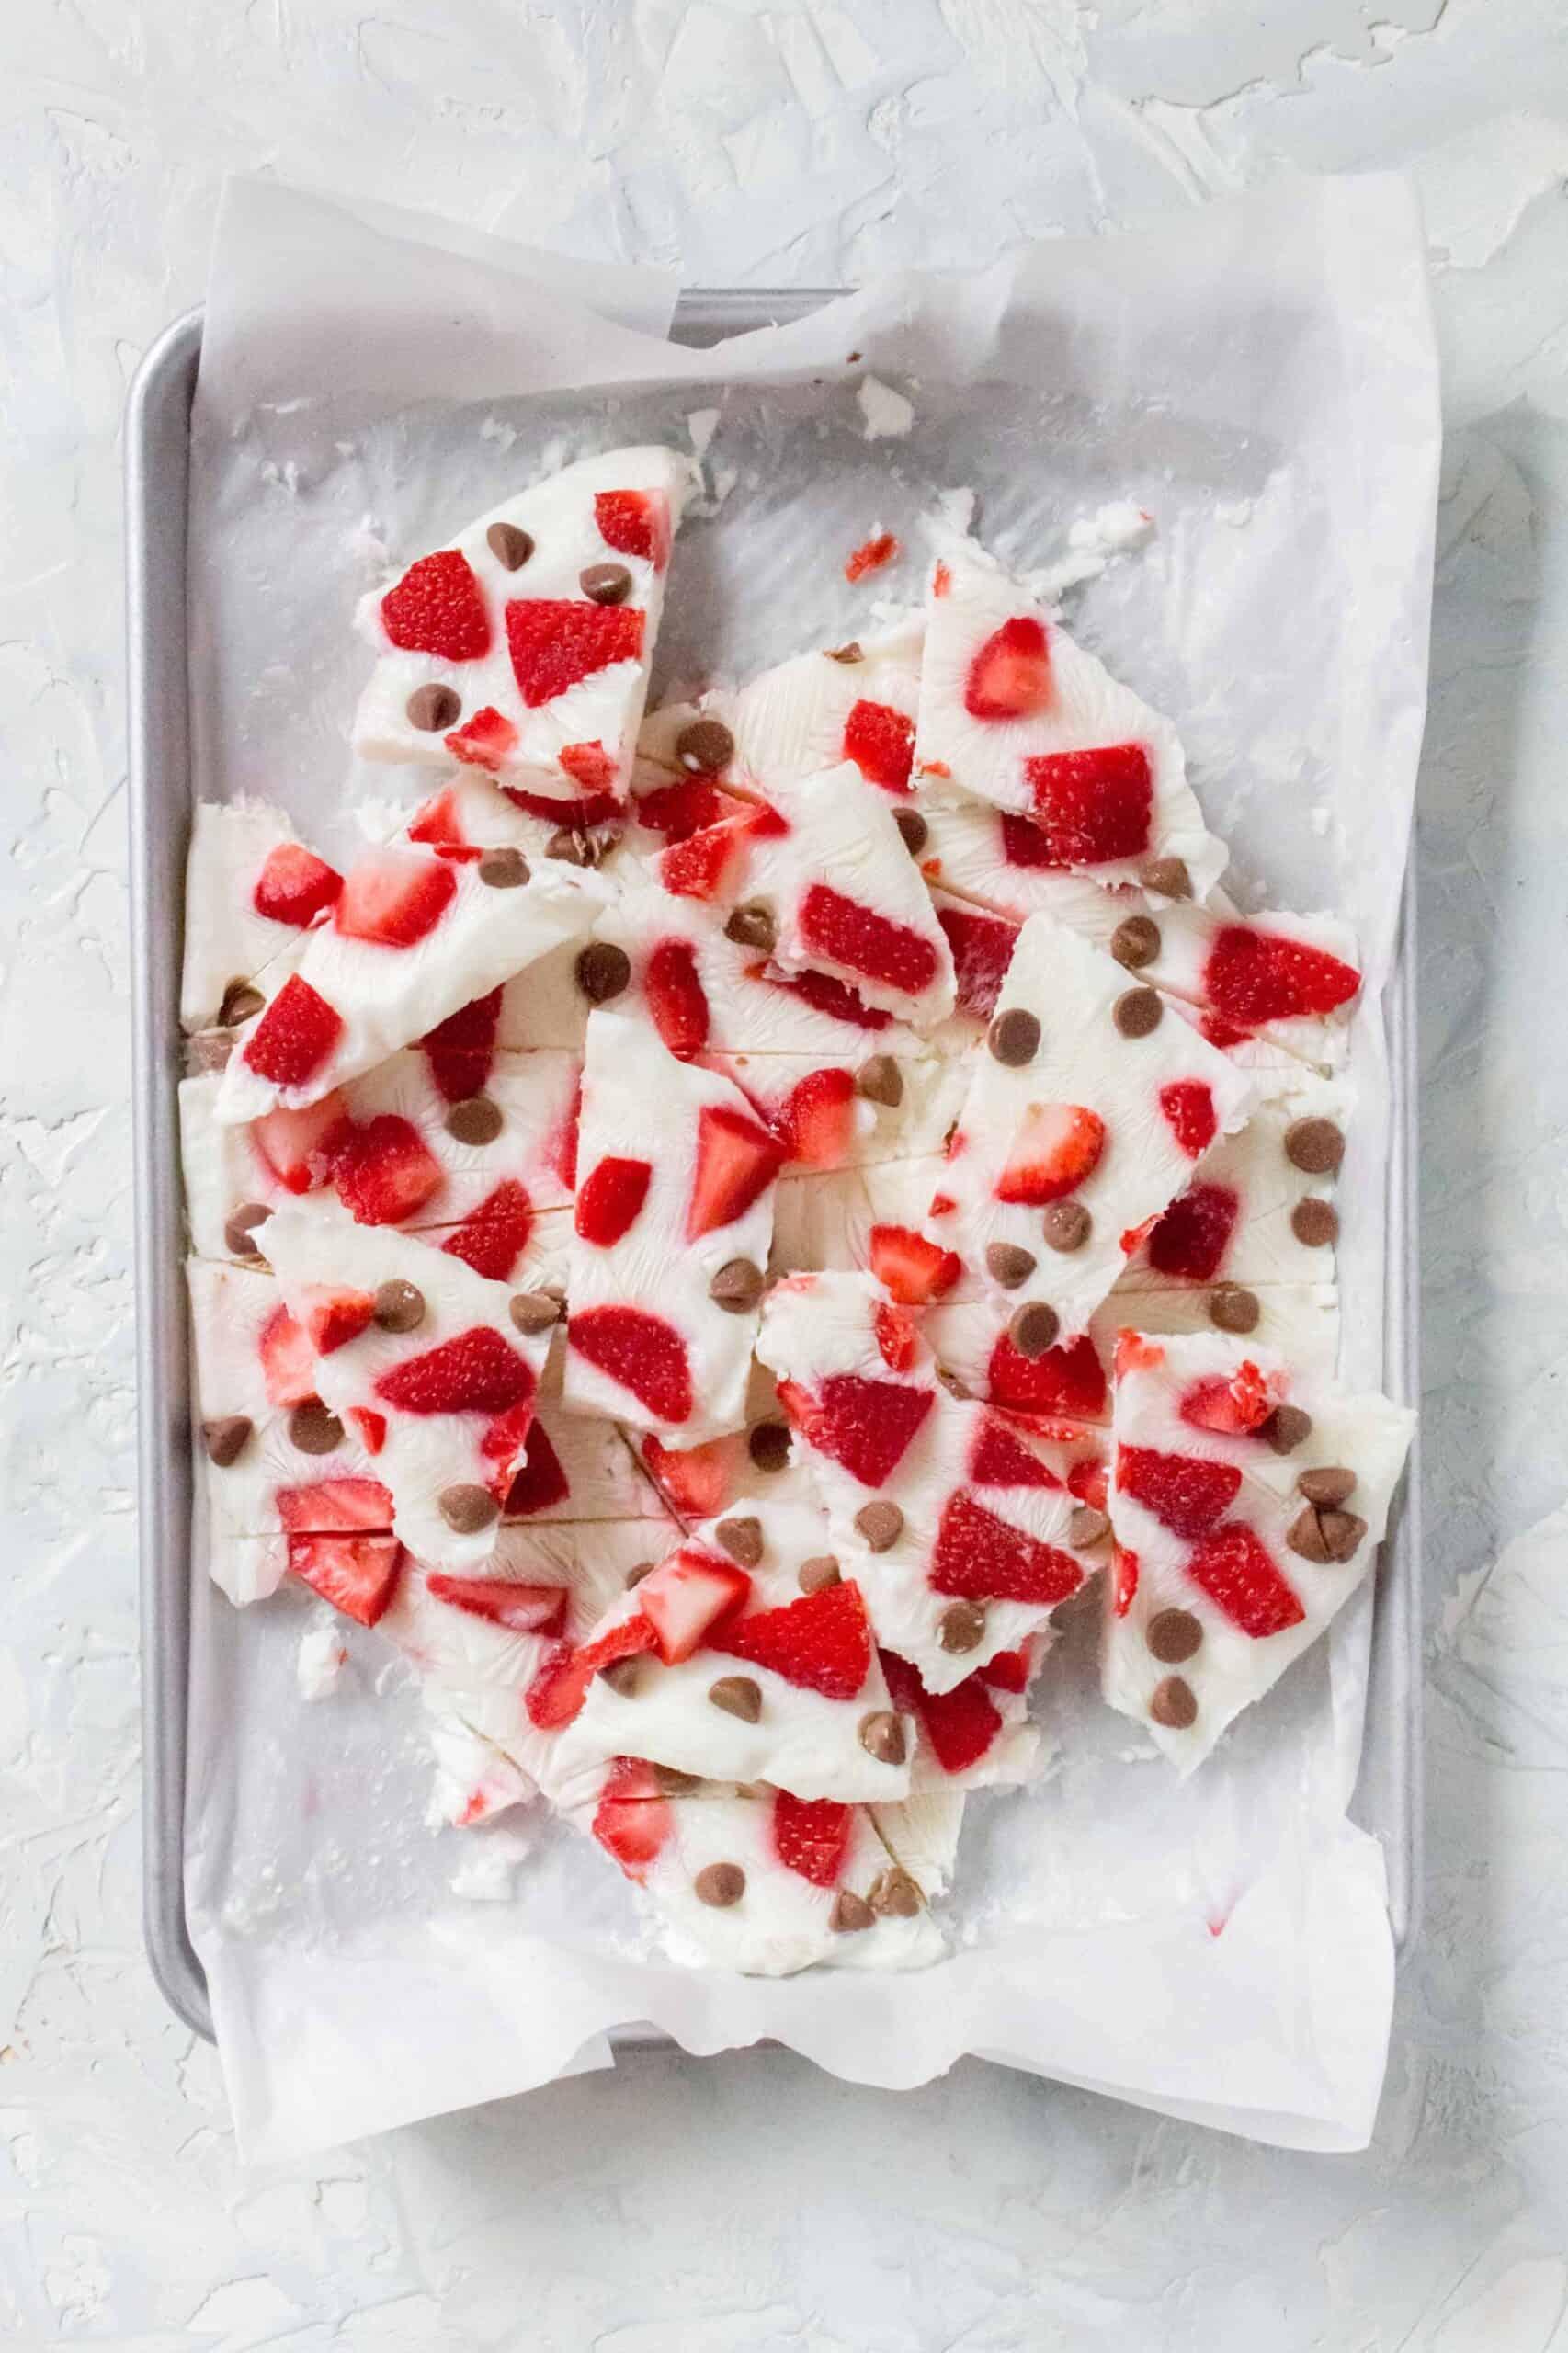 Frozen Yogurt Bark with Strawberries and Chocolate Chips